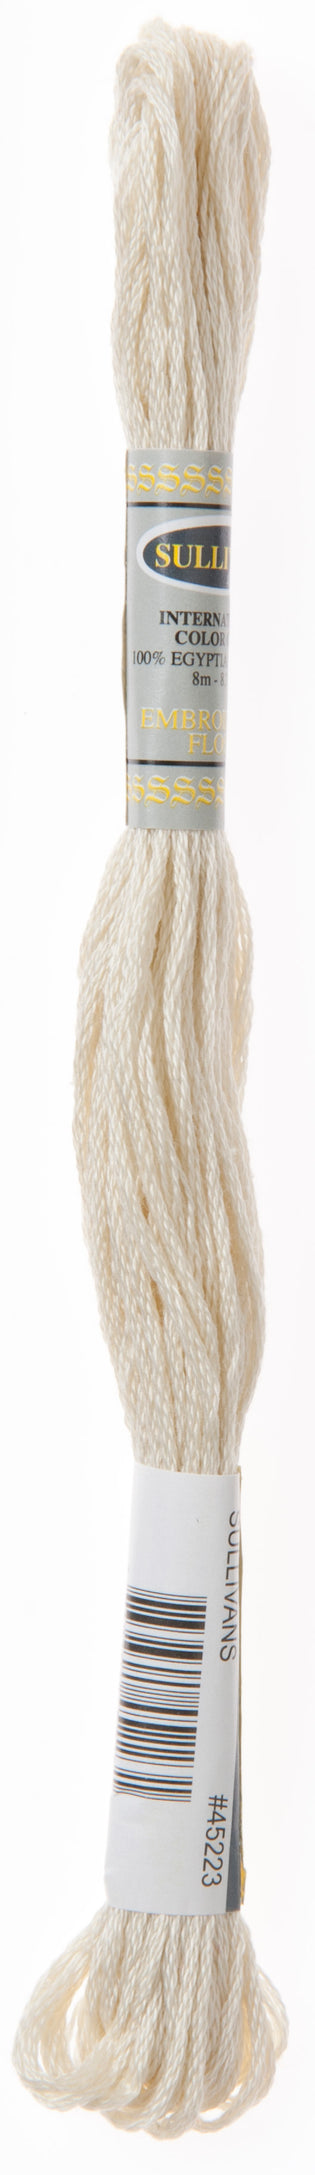 Makr Baby Soft Crochet & Knitting Yarn 8ply, White- 100g Acrylic Nylon –  Lincraft New Zealand